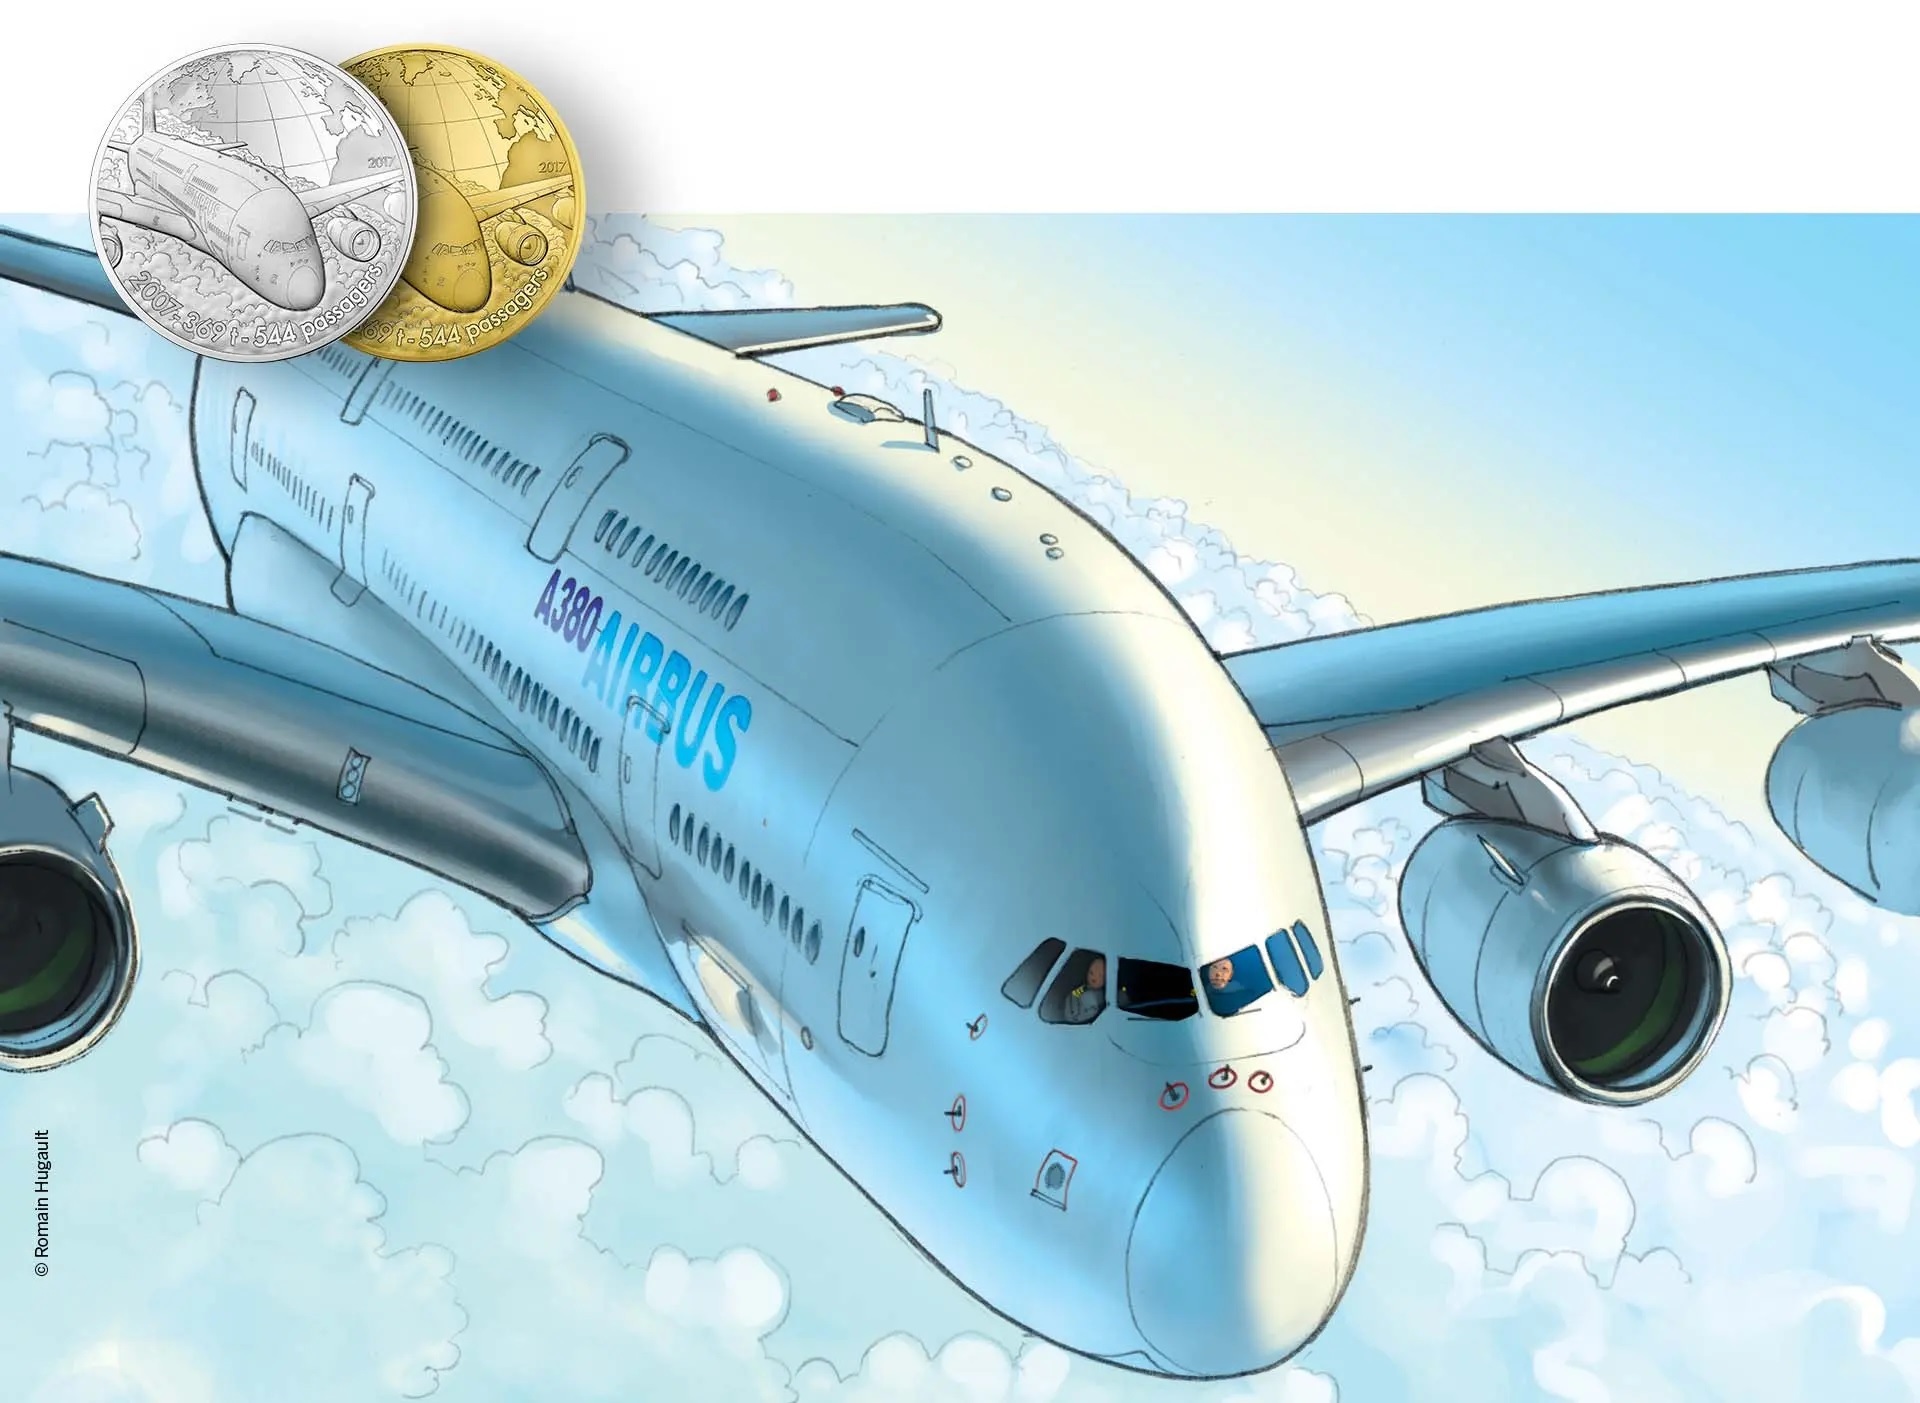 Monnaie de Paris Airbus A380 2017 (shop illustration) (zoom)